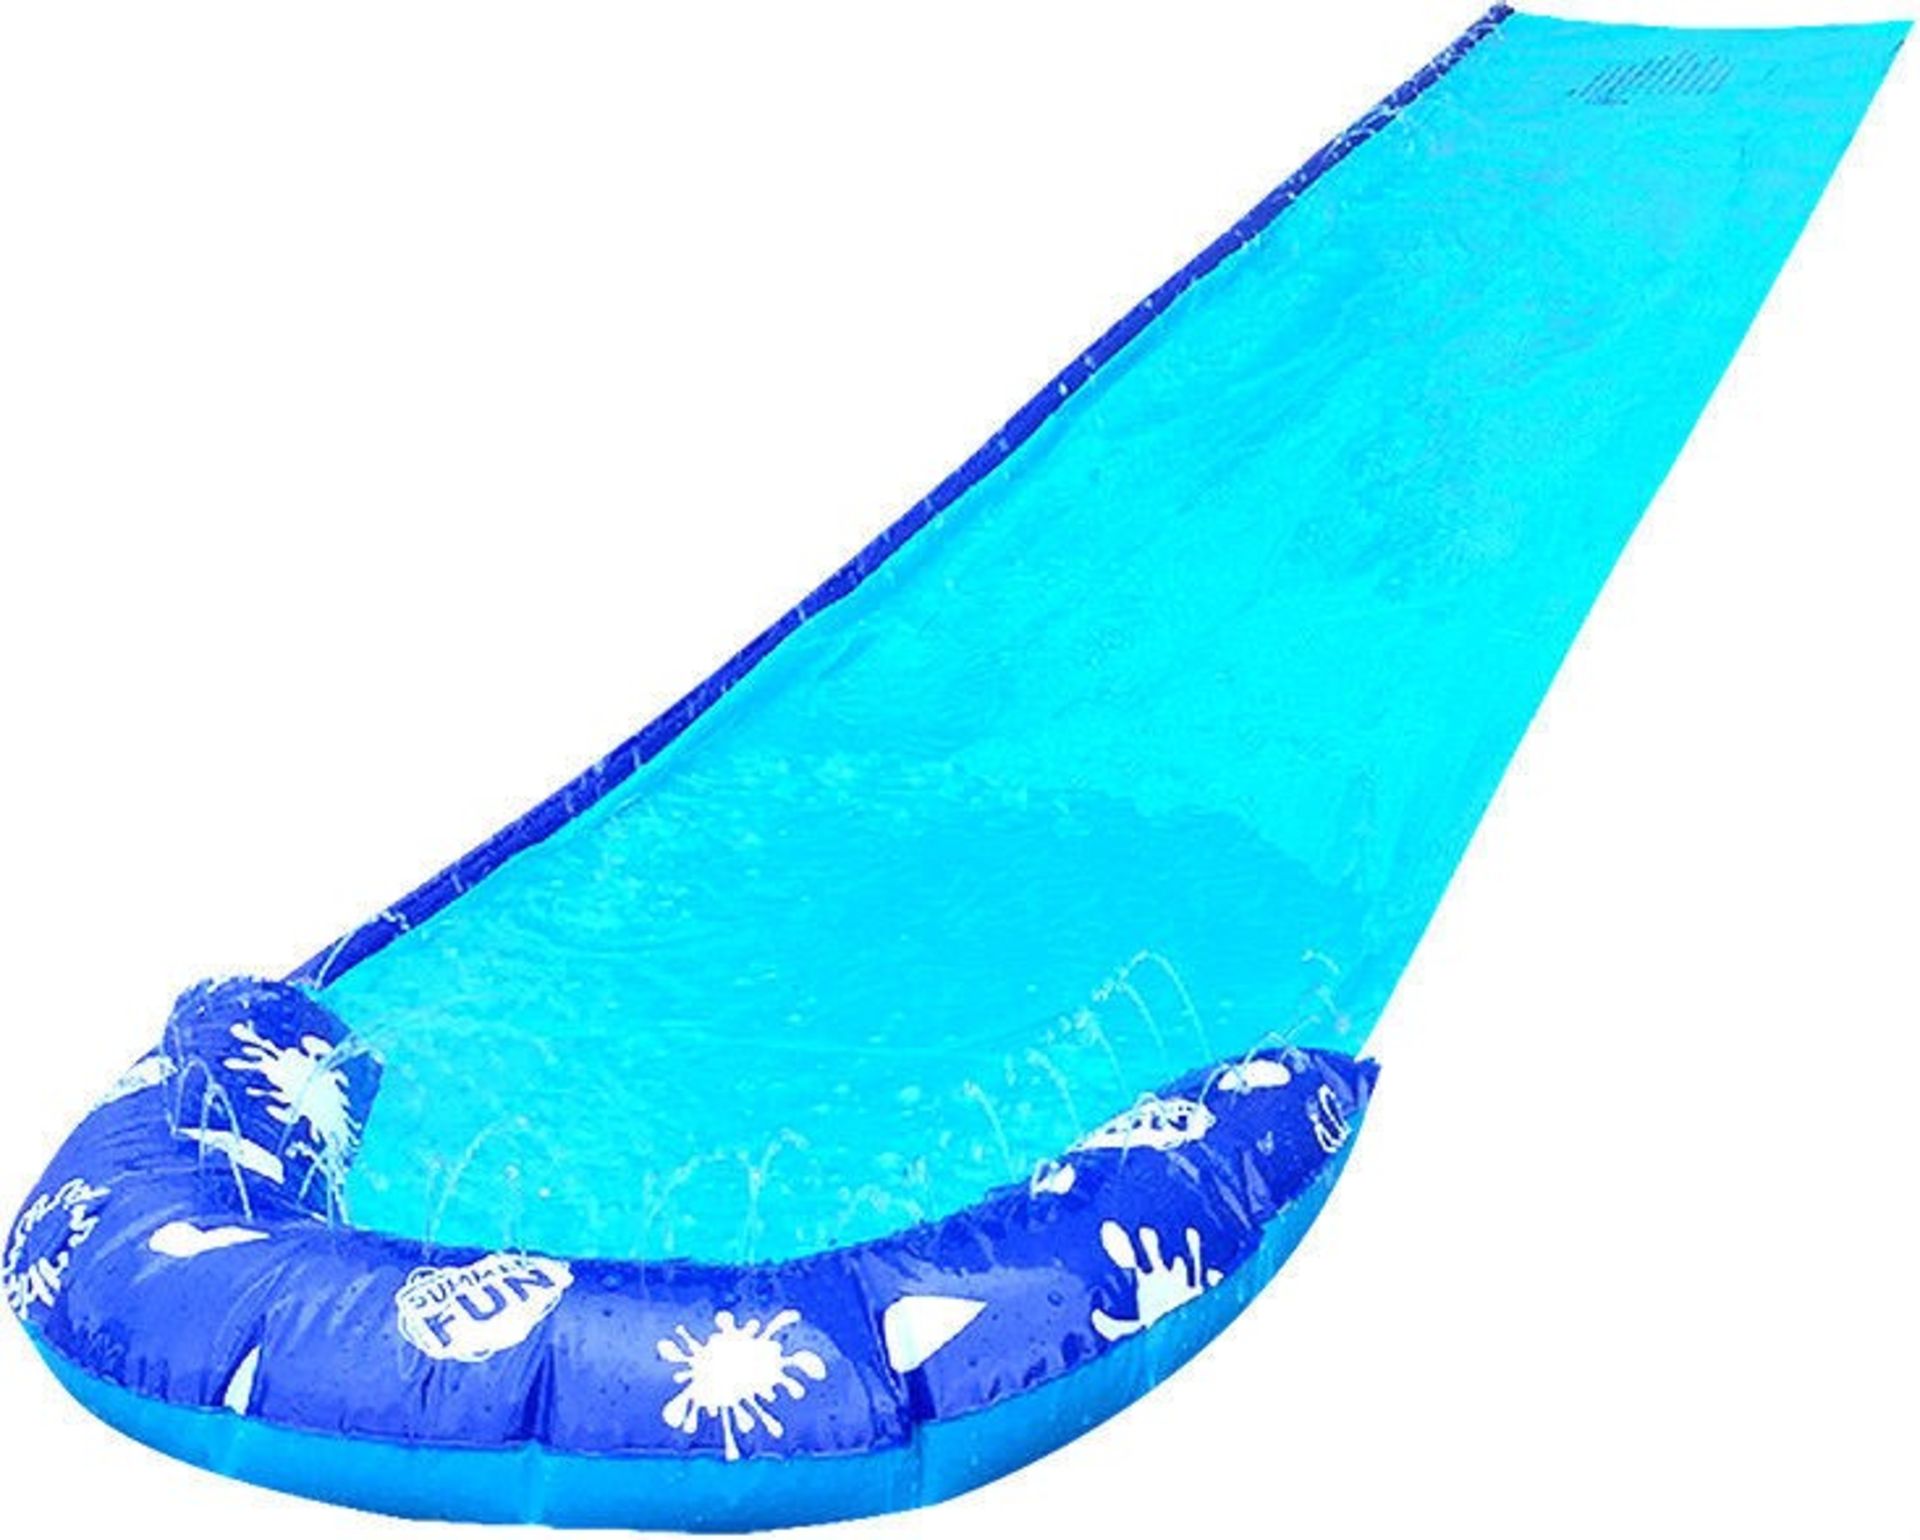 1 x "Aqua-Slider" 16ft Water Slide - Garden Slip-n-Slide Inflatable Toy - Brand New & Boxed - - Image 3 of 4